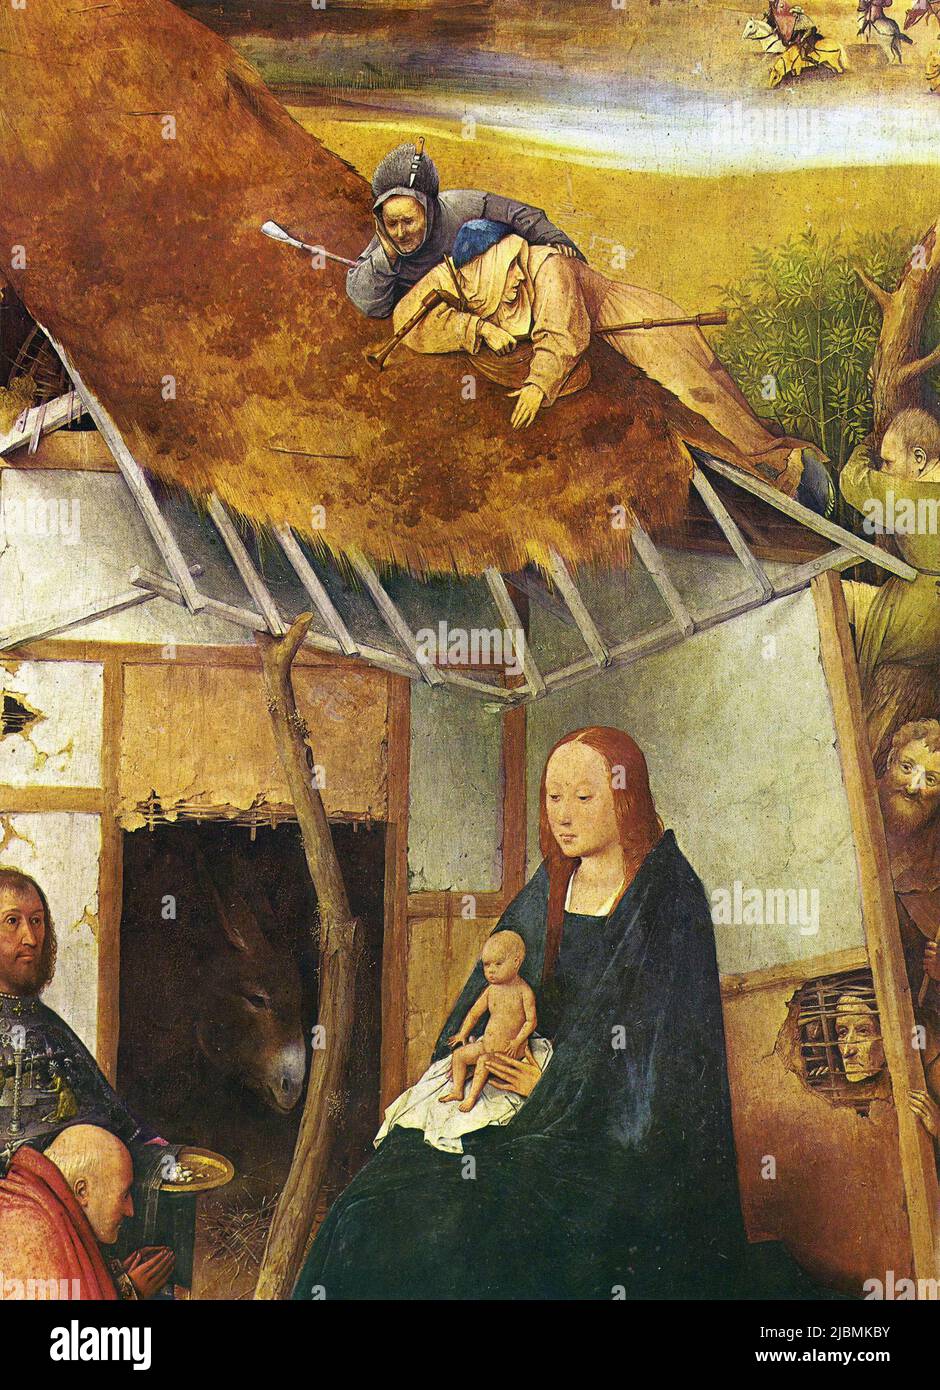 'La Adoración de los Magos'. Detalle del panel central del tríptico de Hieronymus Bosch. Madrid, Prado. Foto de stock